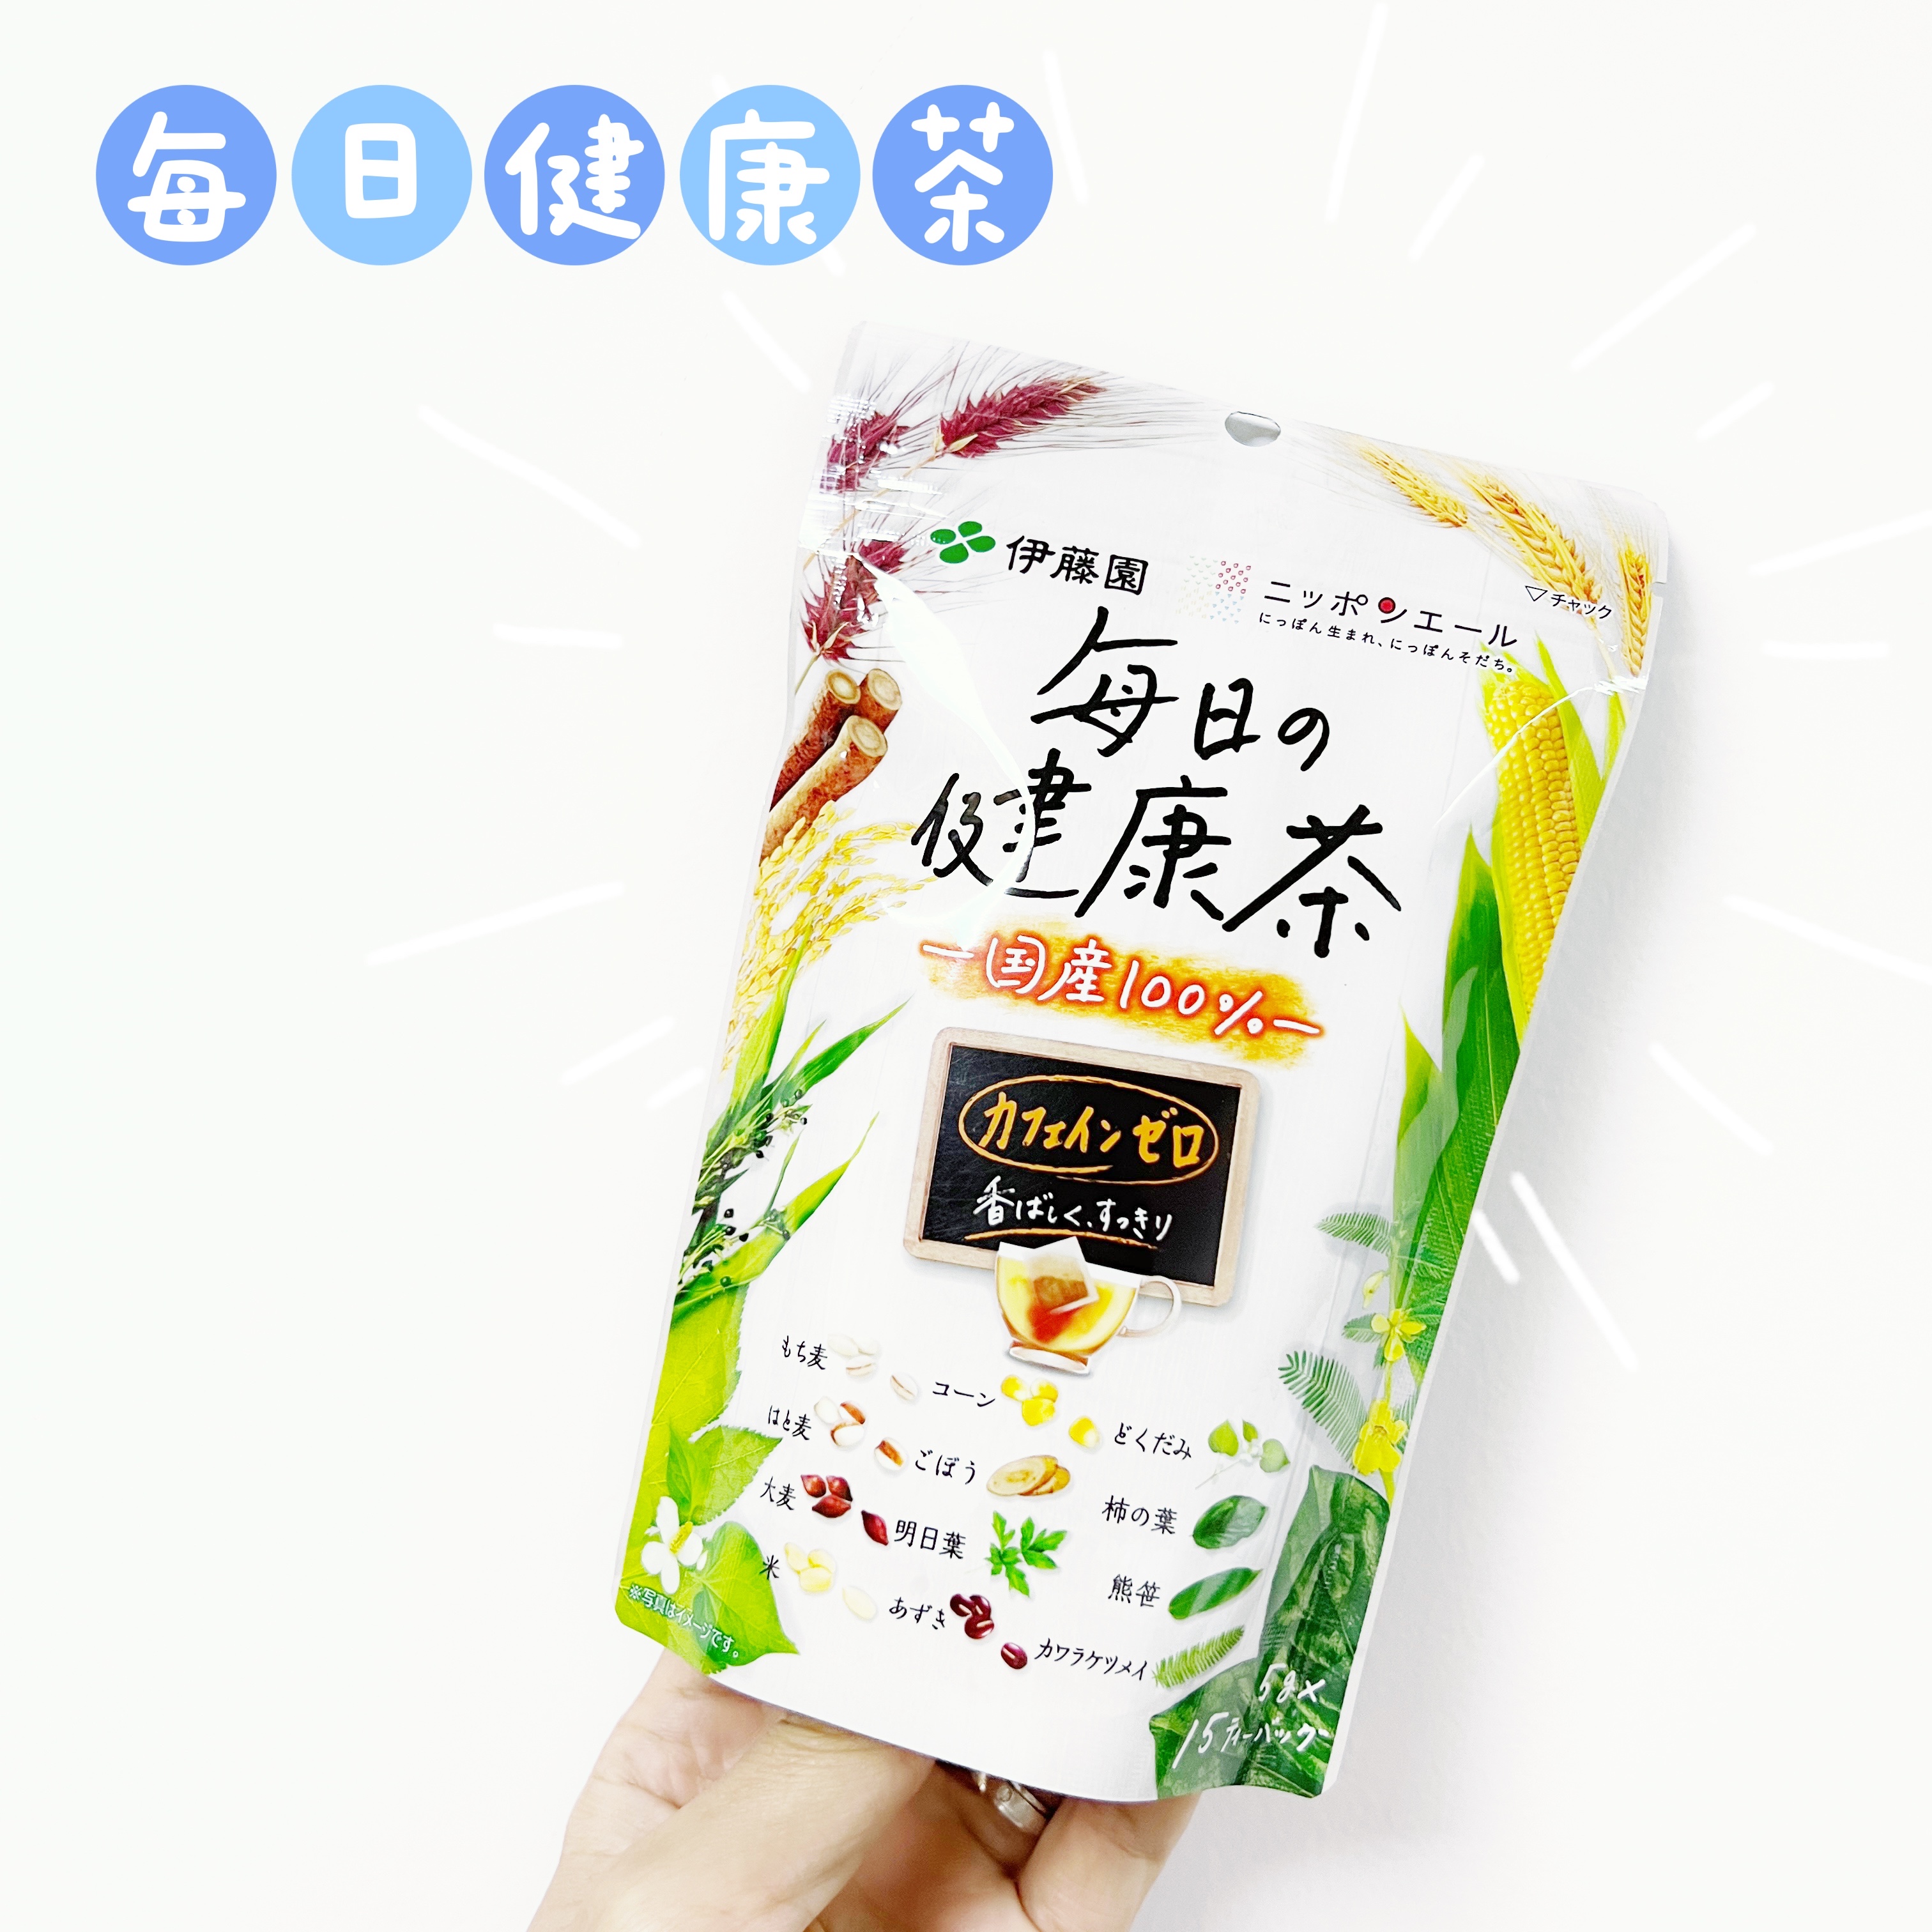 现货 日本原装伊藤园每日の健康茶 无咖啡因混合茶15袋装